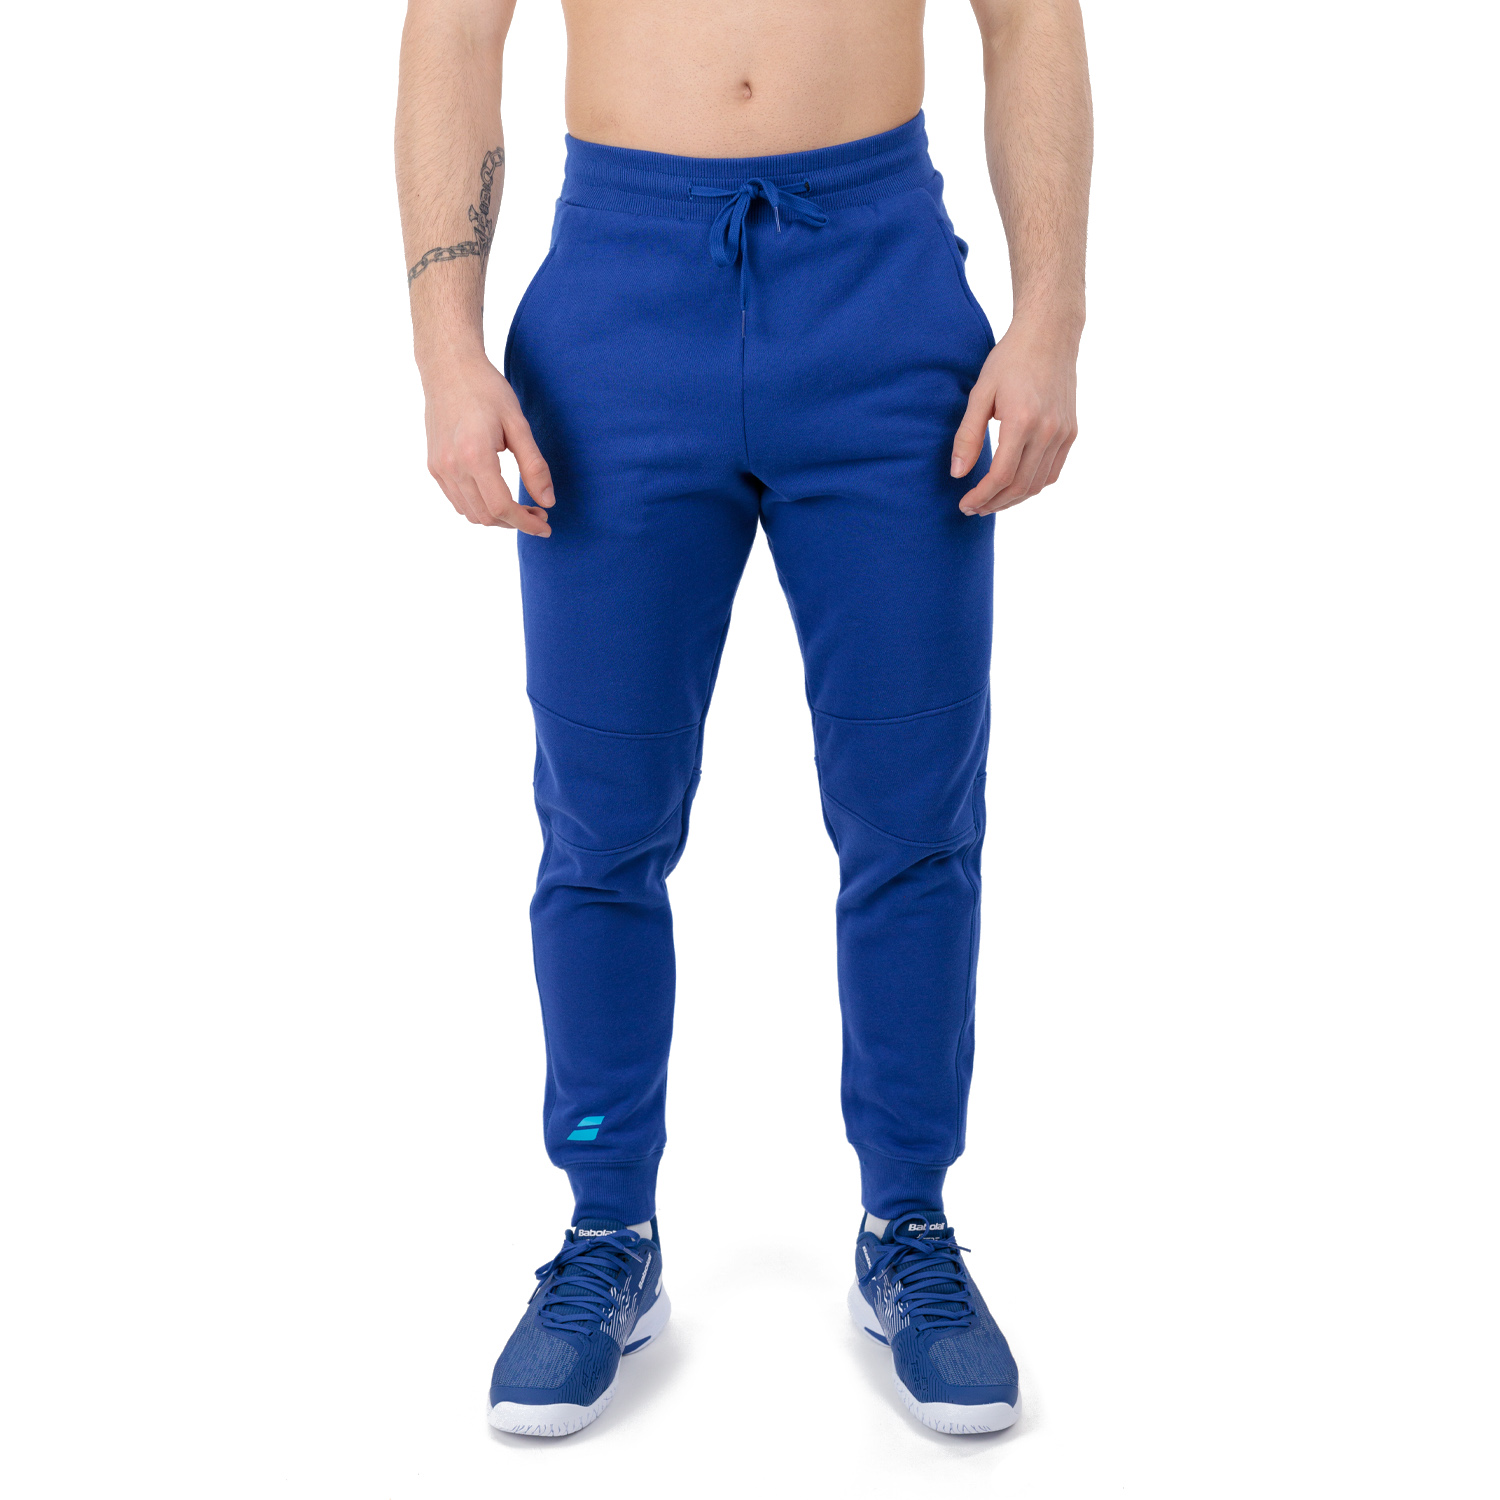 Babolat Exercise Pantaloni - Sodalite Blue